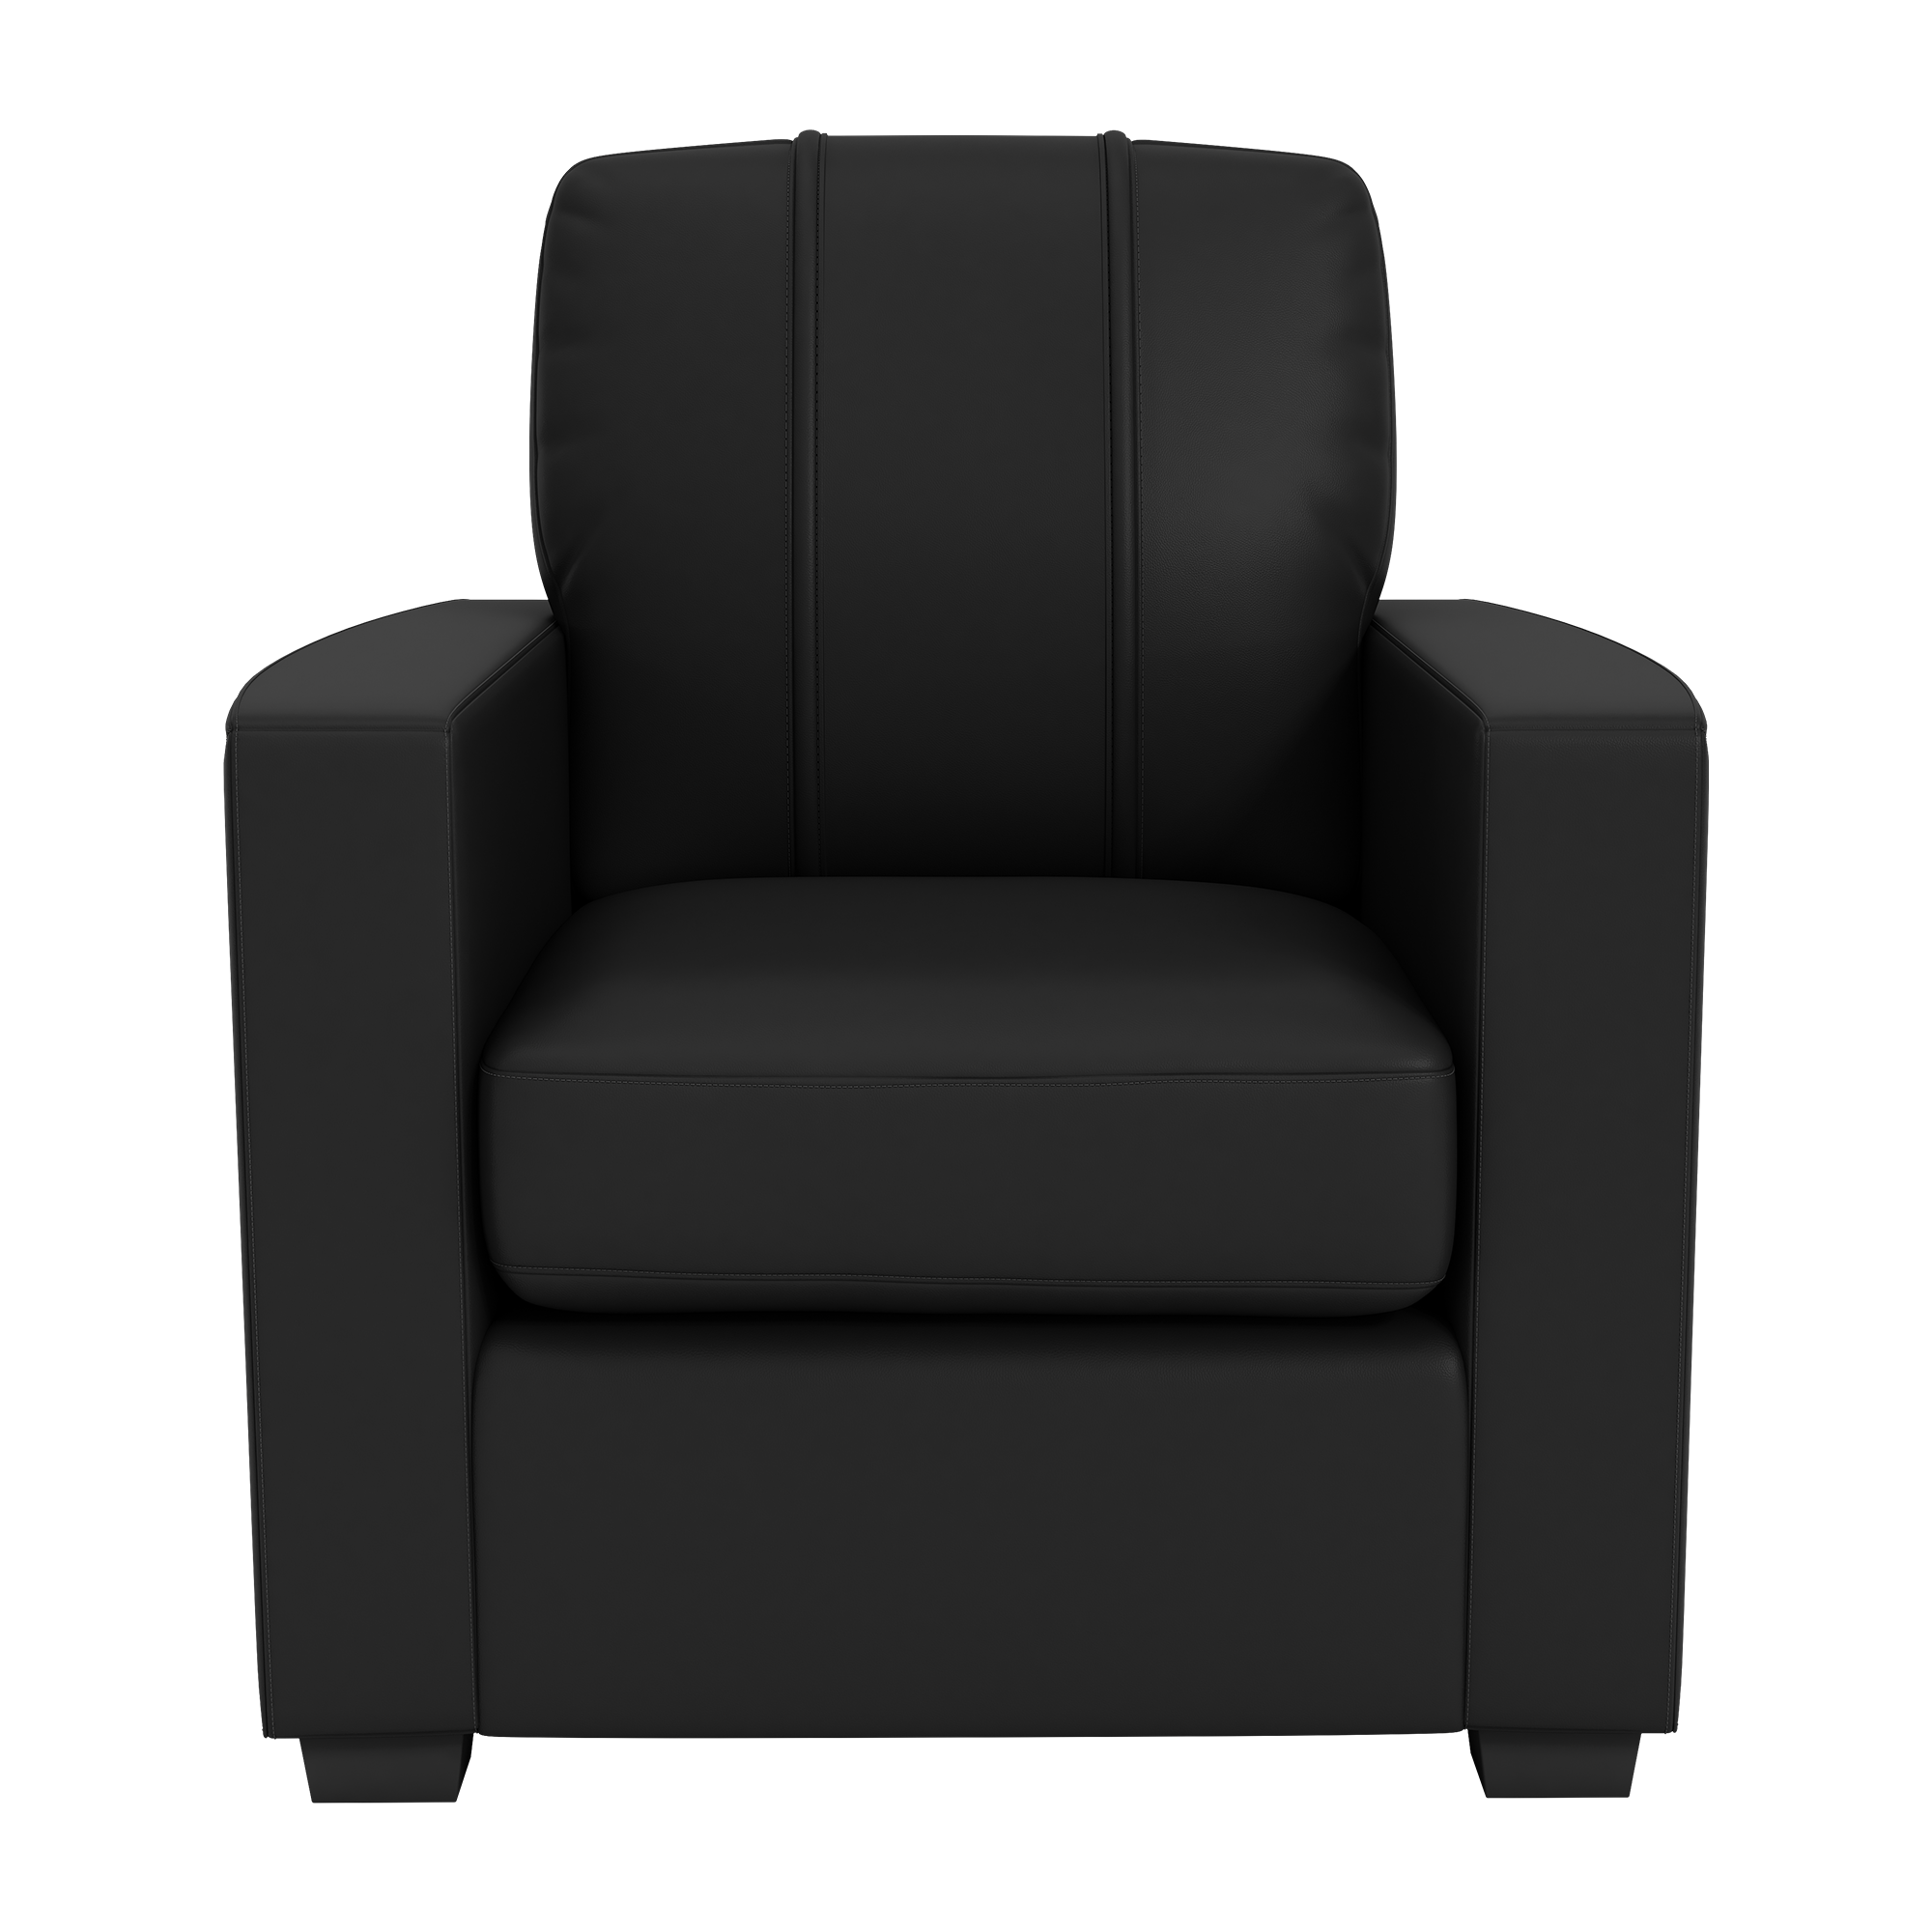 Silver Club Chair with  Dallas Cowboys Helmet Logo